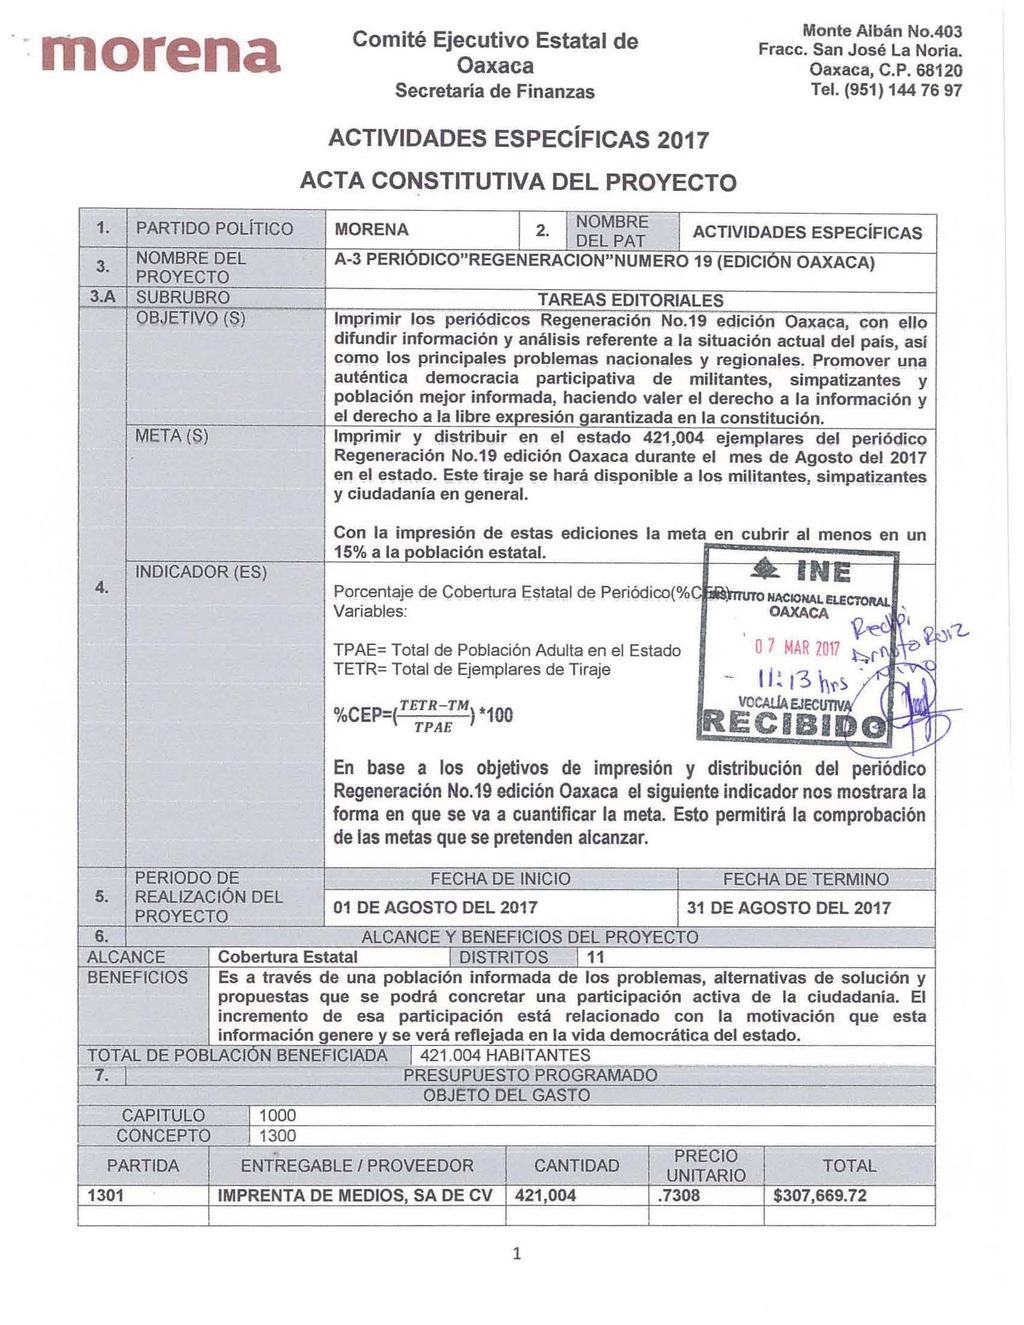 morena Secreta ria de Finanzas ACTIVIDADES ESPECiFICAS 2017 ACTA CONSTITUTIVA DEL Monte Alban No.403, C.P. 68120 1. PARTIDO POliTICO NOMBRE DEL A SUBRUBRO OBJETIVO (S) META (S) MORENA I I NOMBRE 2.